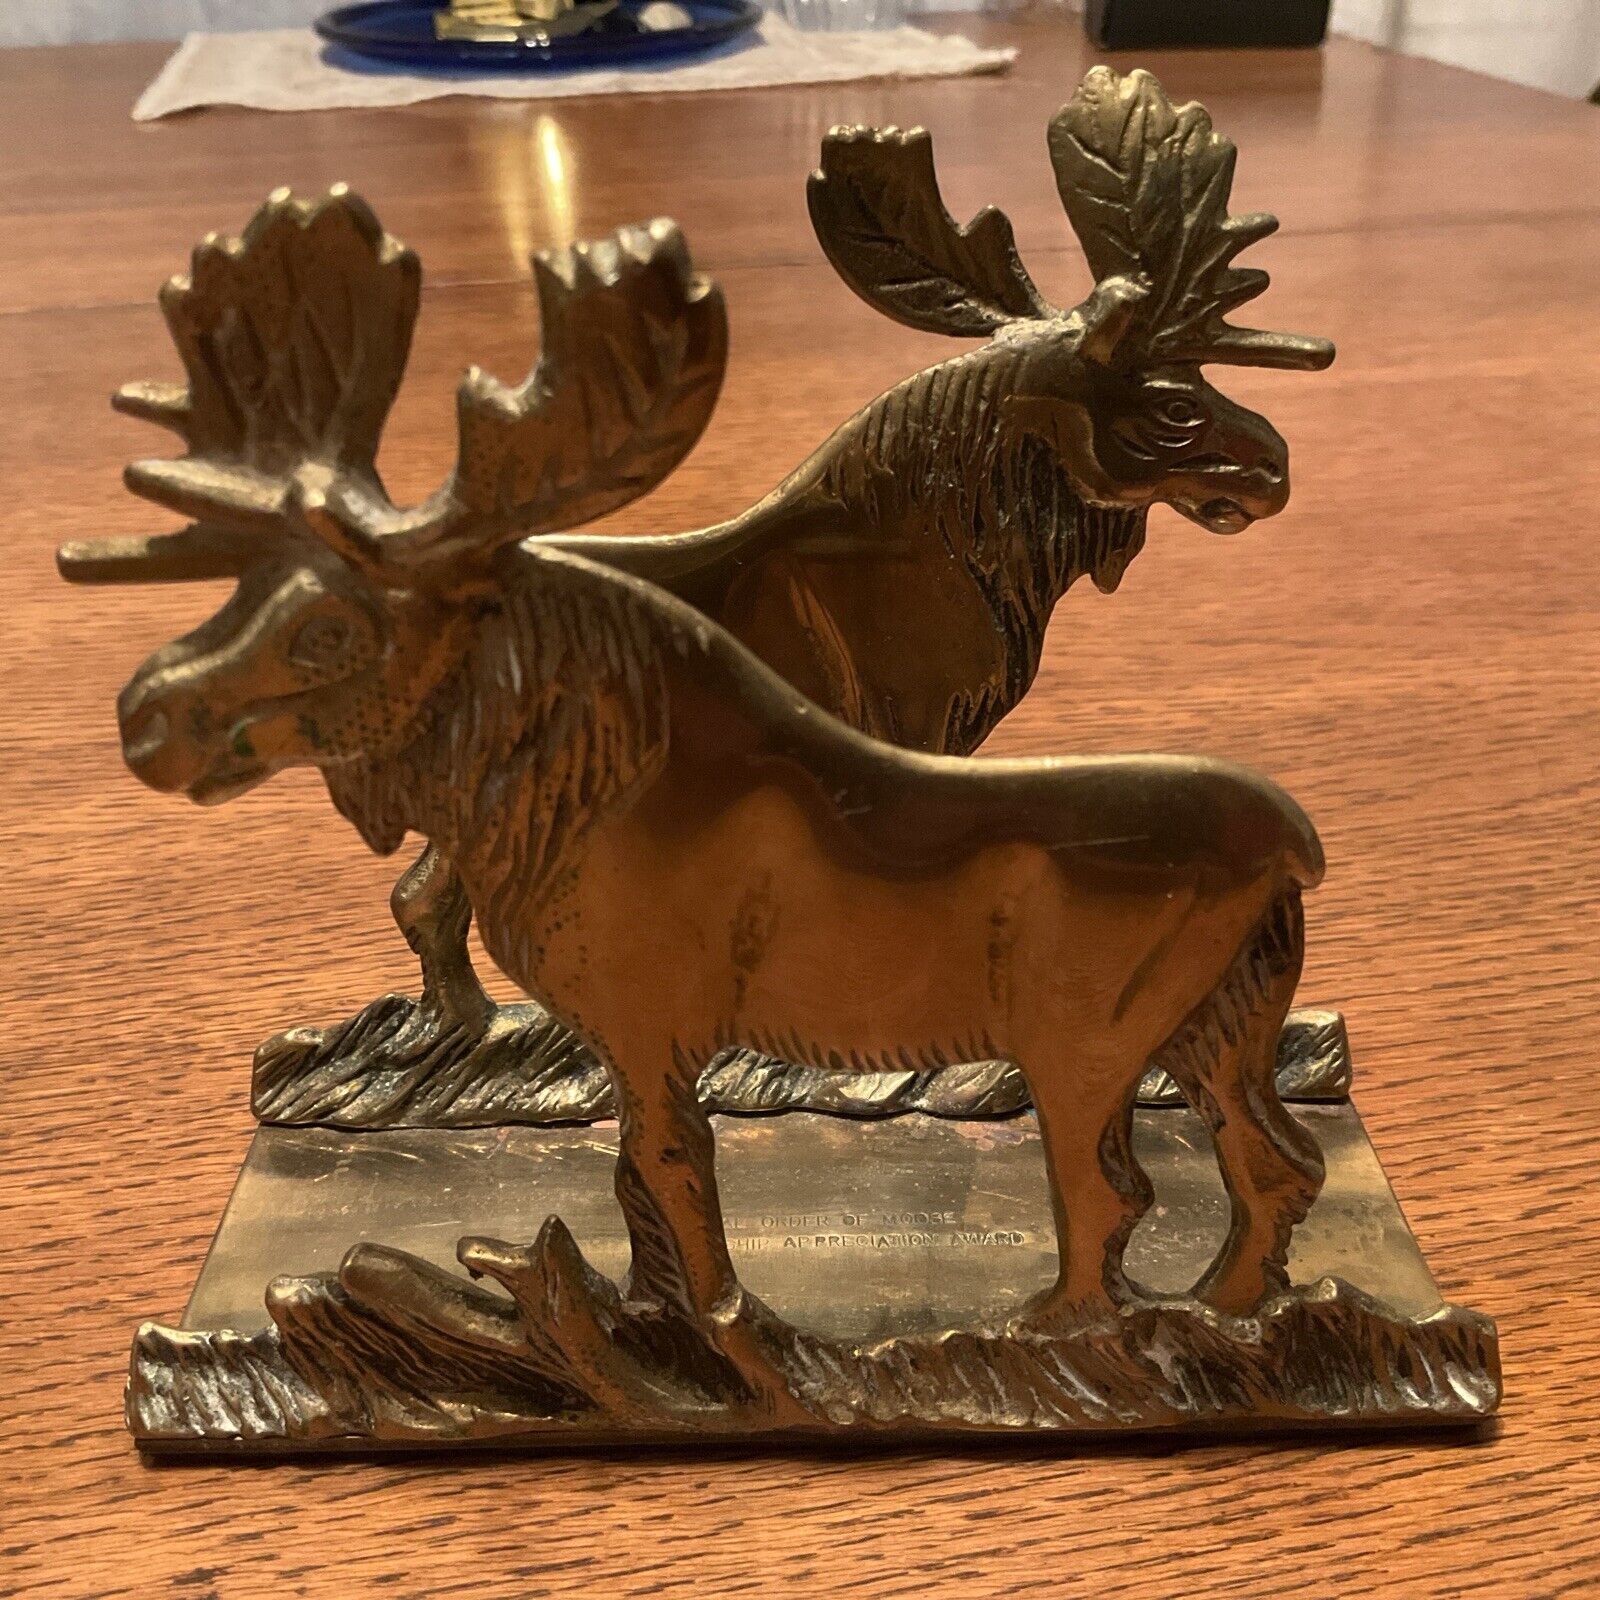 Vintage Brass Desk Letter Napkin Holder Loyal Order of Moose Appreciation Award